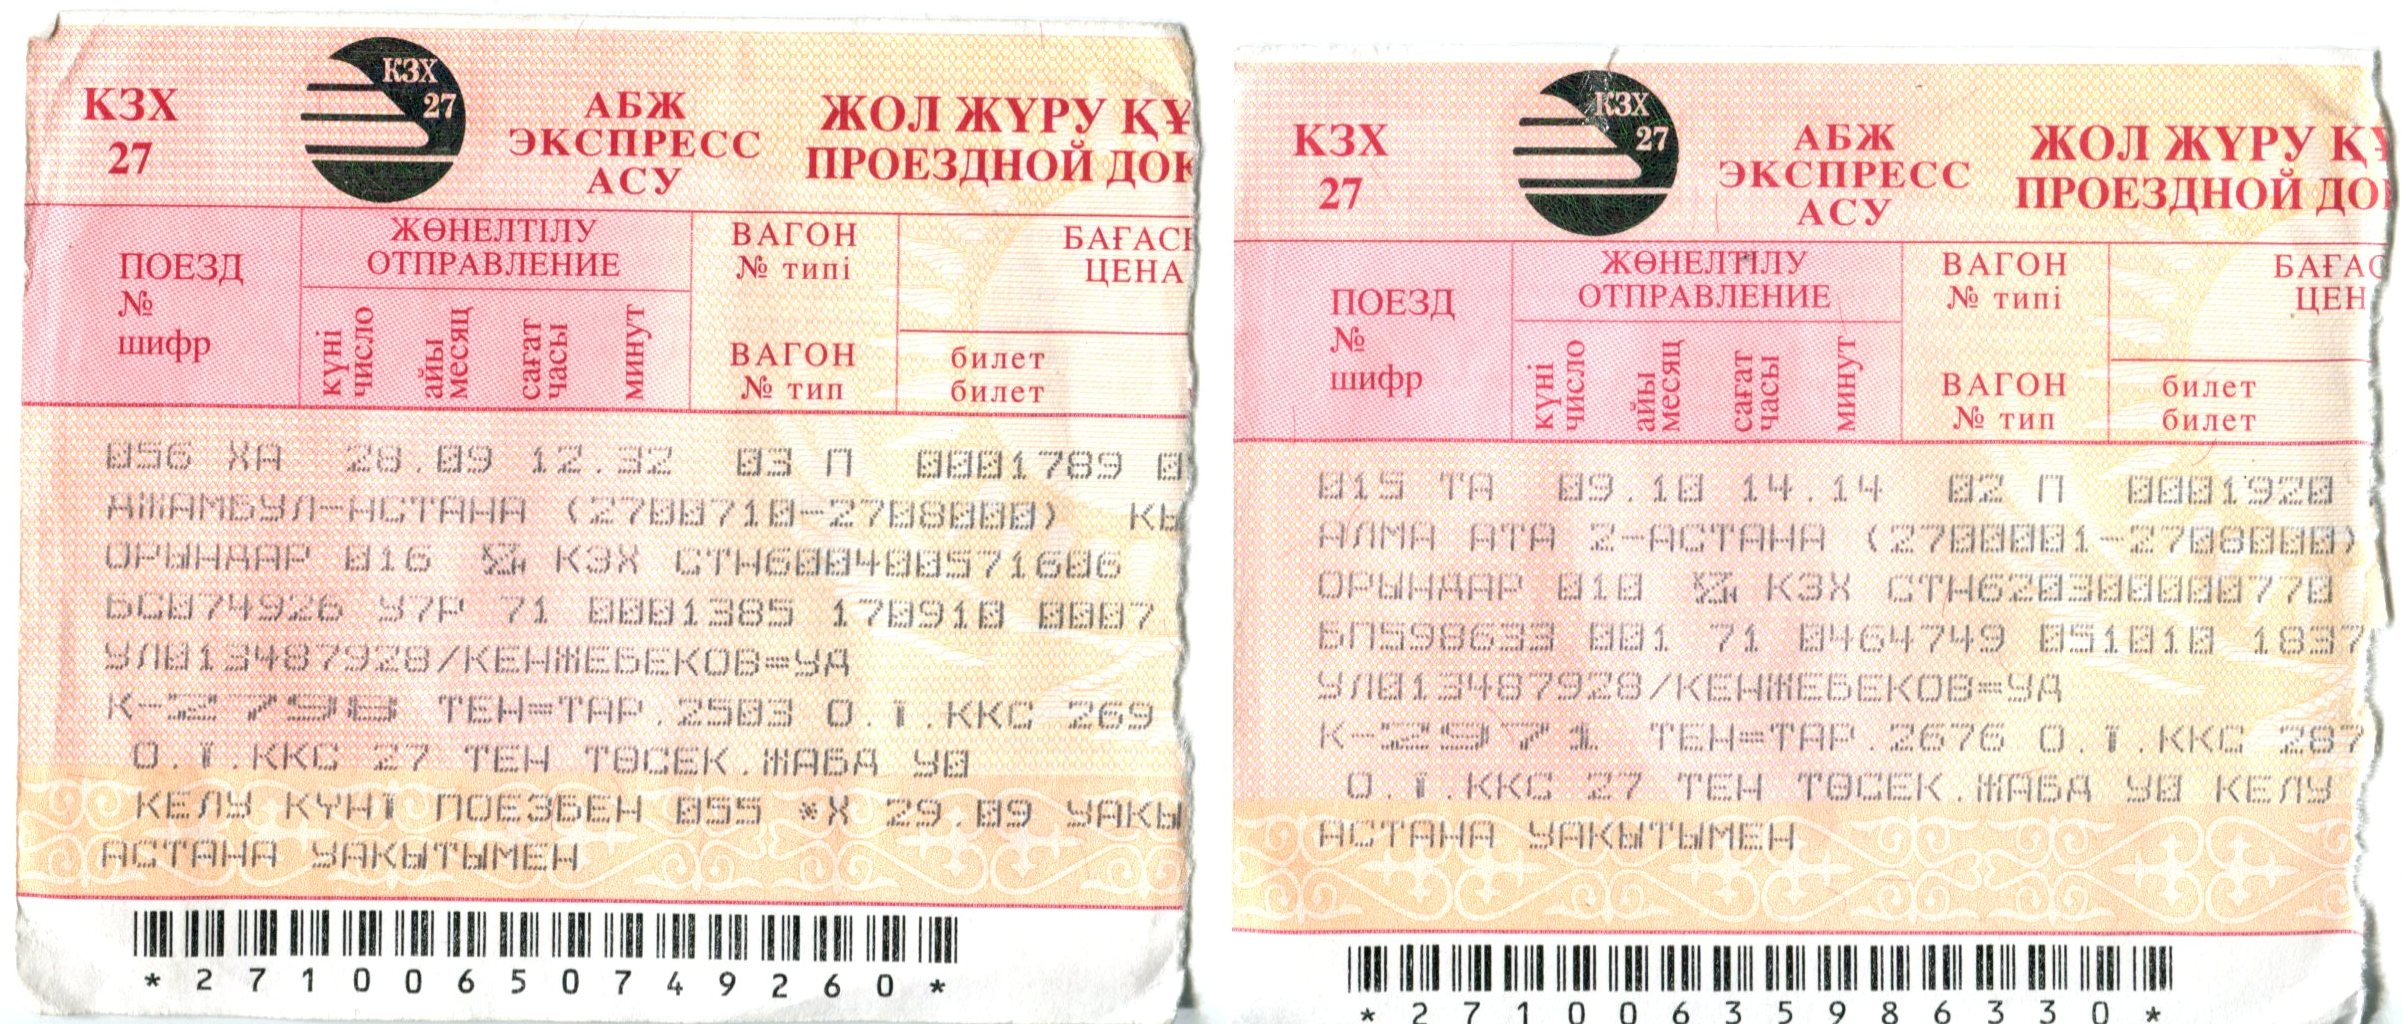 Билеты на поезд кизляр. Билет на поезд. Билет АСУ экспресс. Бланк билета РЖД. Советский билет на поезд.